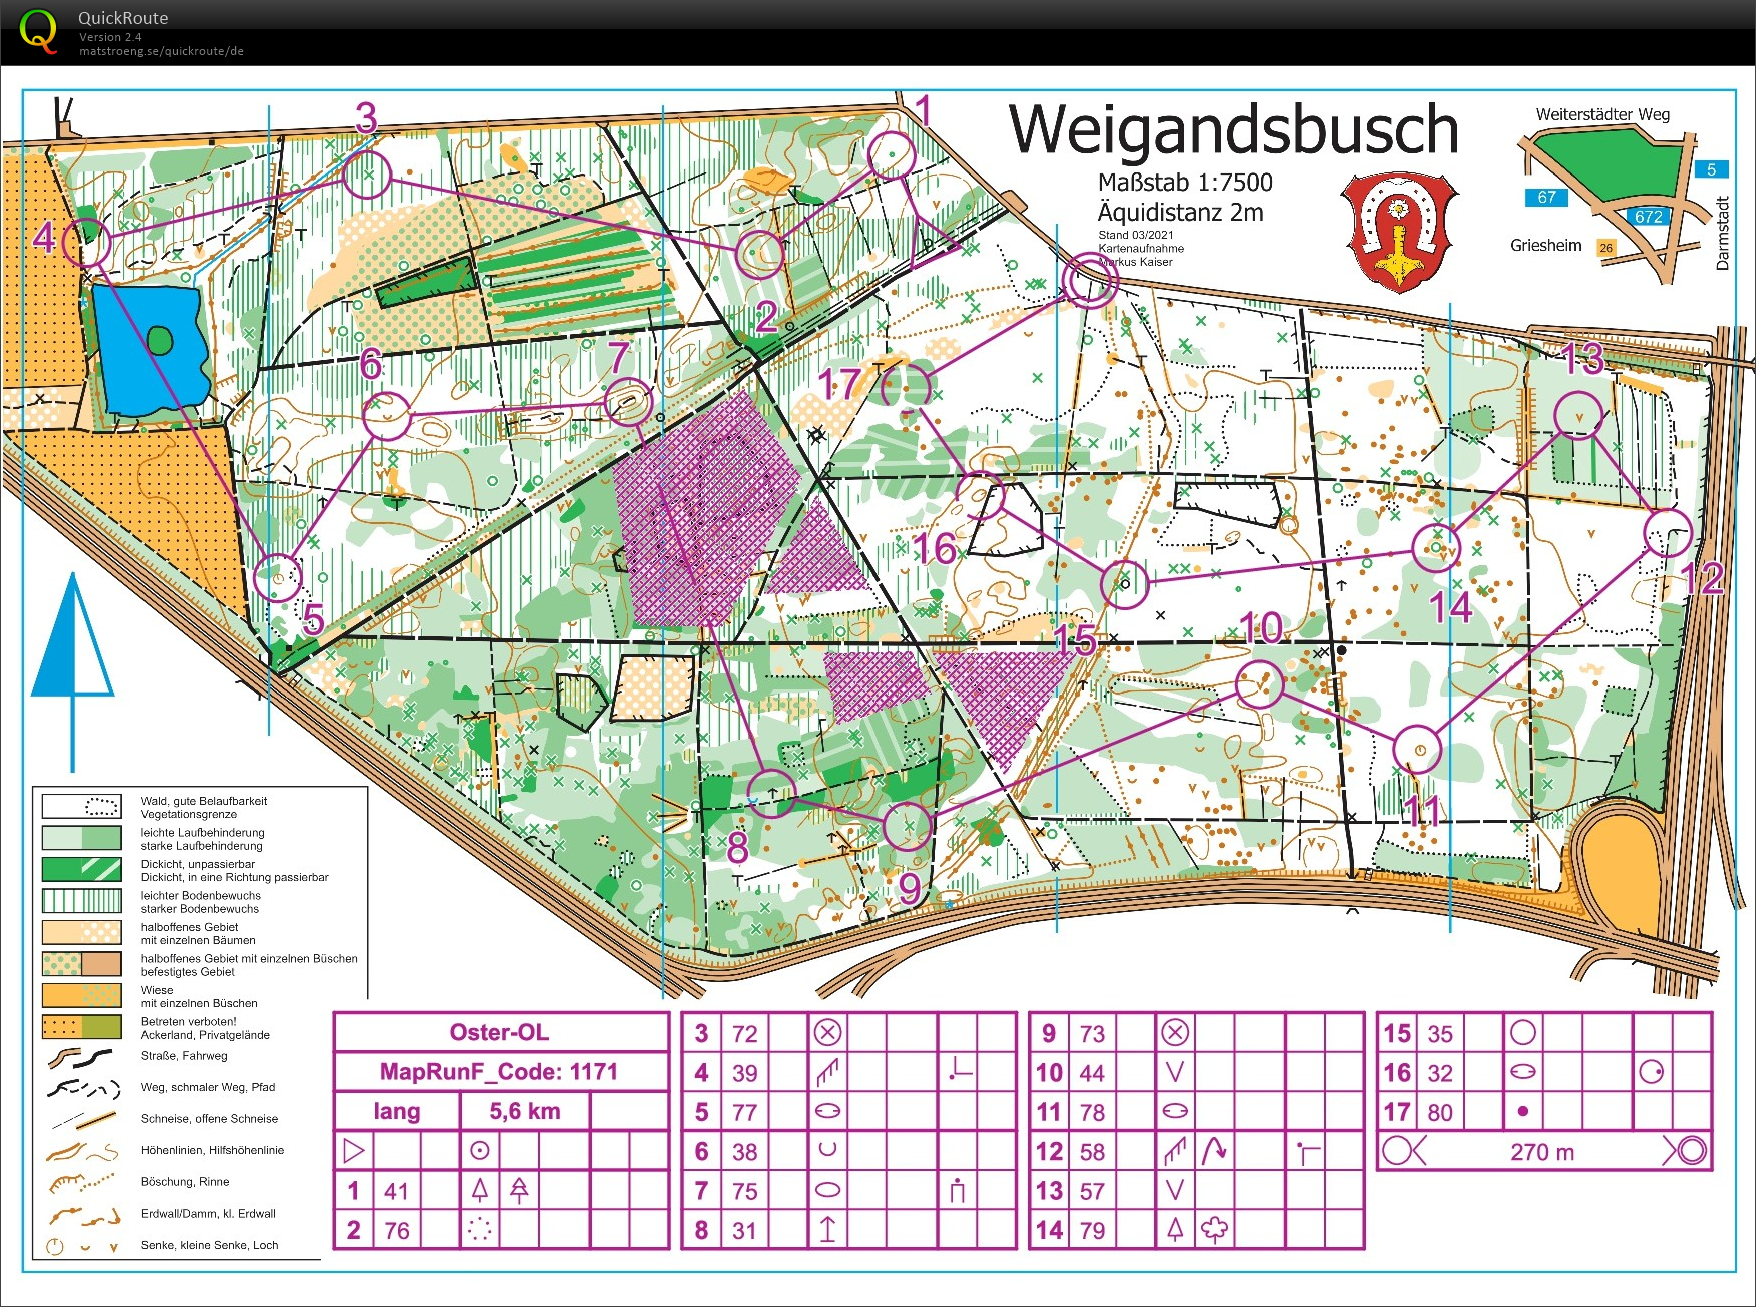 Training Weigandsbusch (09/05/2021)